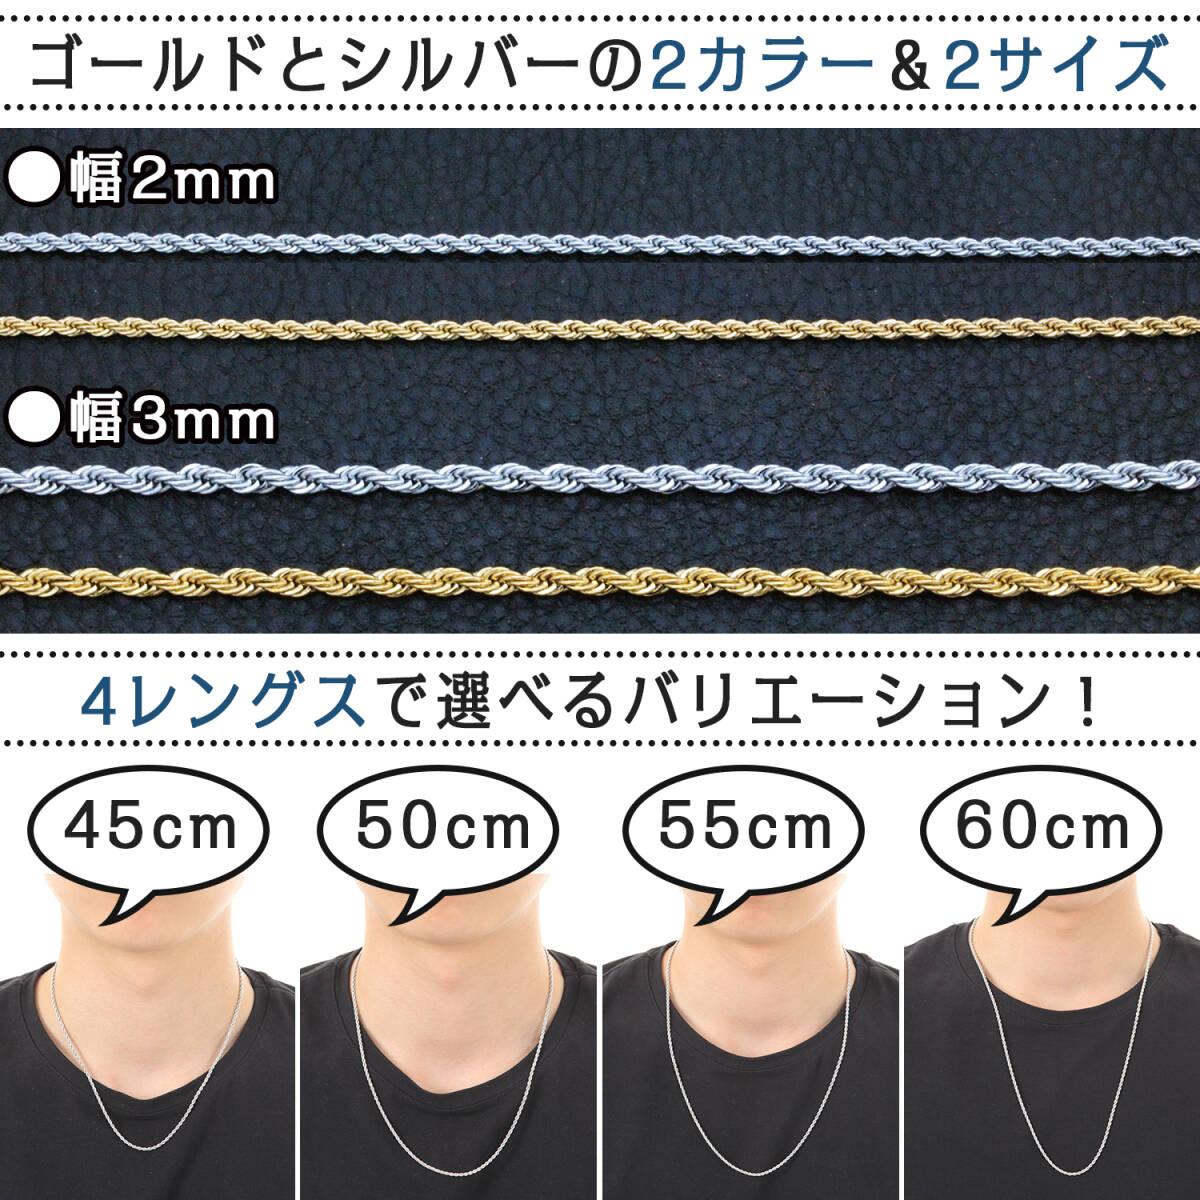 【幅2㎜/45cm】金属アレルギー対応 ネックレス チェーン メンズ レディース シルバー フレンチロープ の画像3